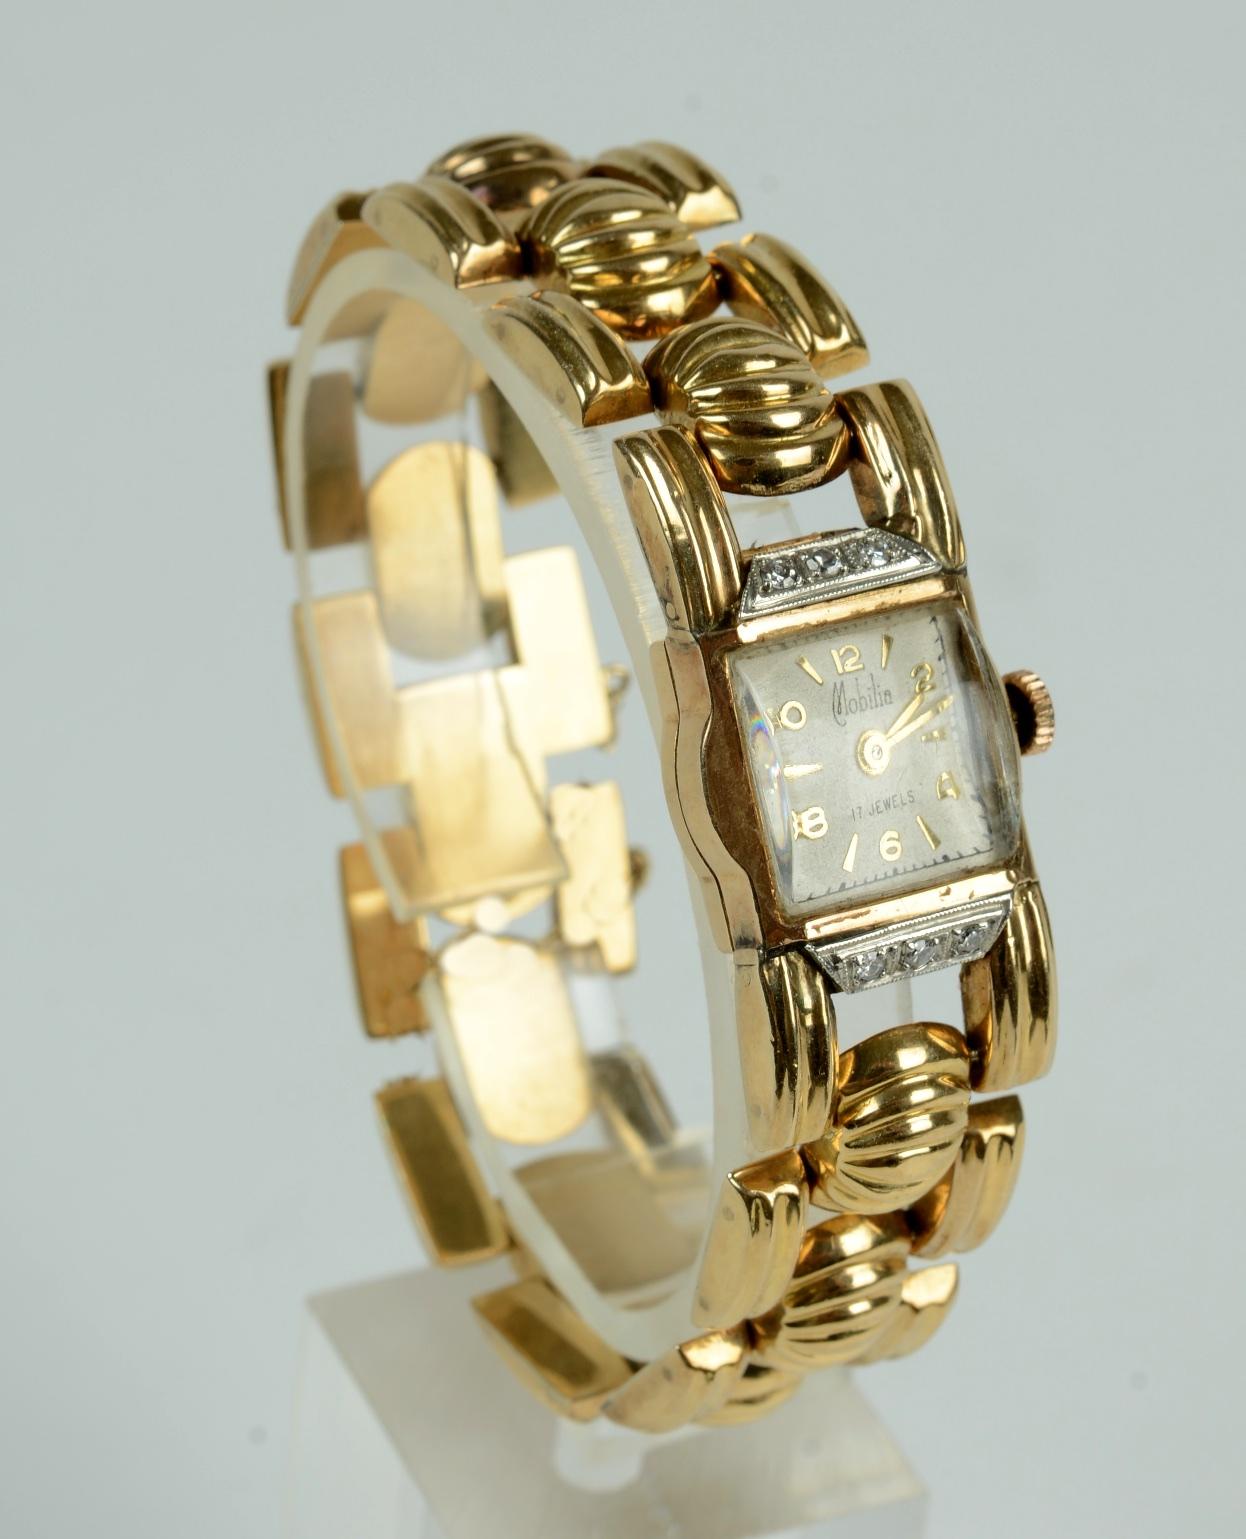 Damen Retro 18k Gelbgold und Diamant Armbanduhr, c1940's. Das Armband besteht aus elf gerippten, gelenkig gelagerten Kugeln mit einem verdeckten Verschluss und einer Sicherheitskette. Das modifizierte tourneauförmige Zifferblatt ist mit 